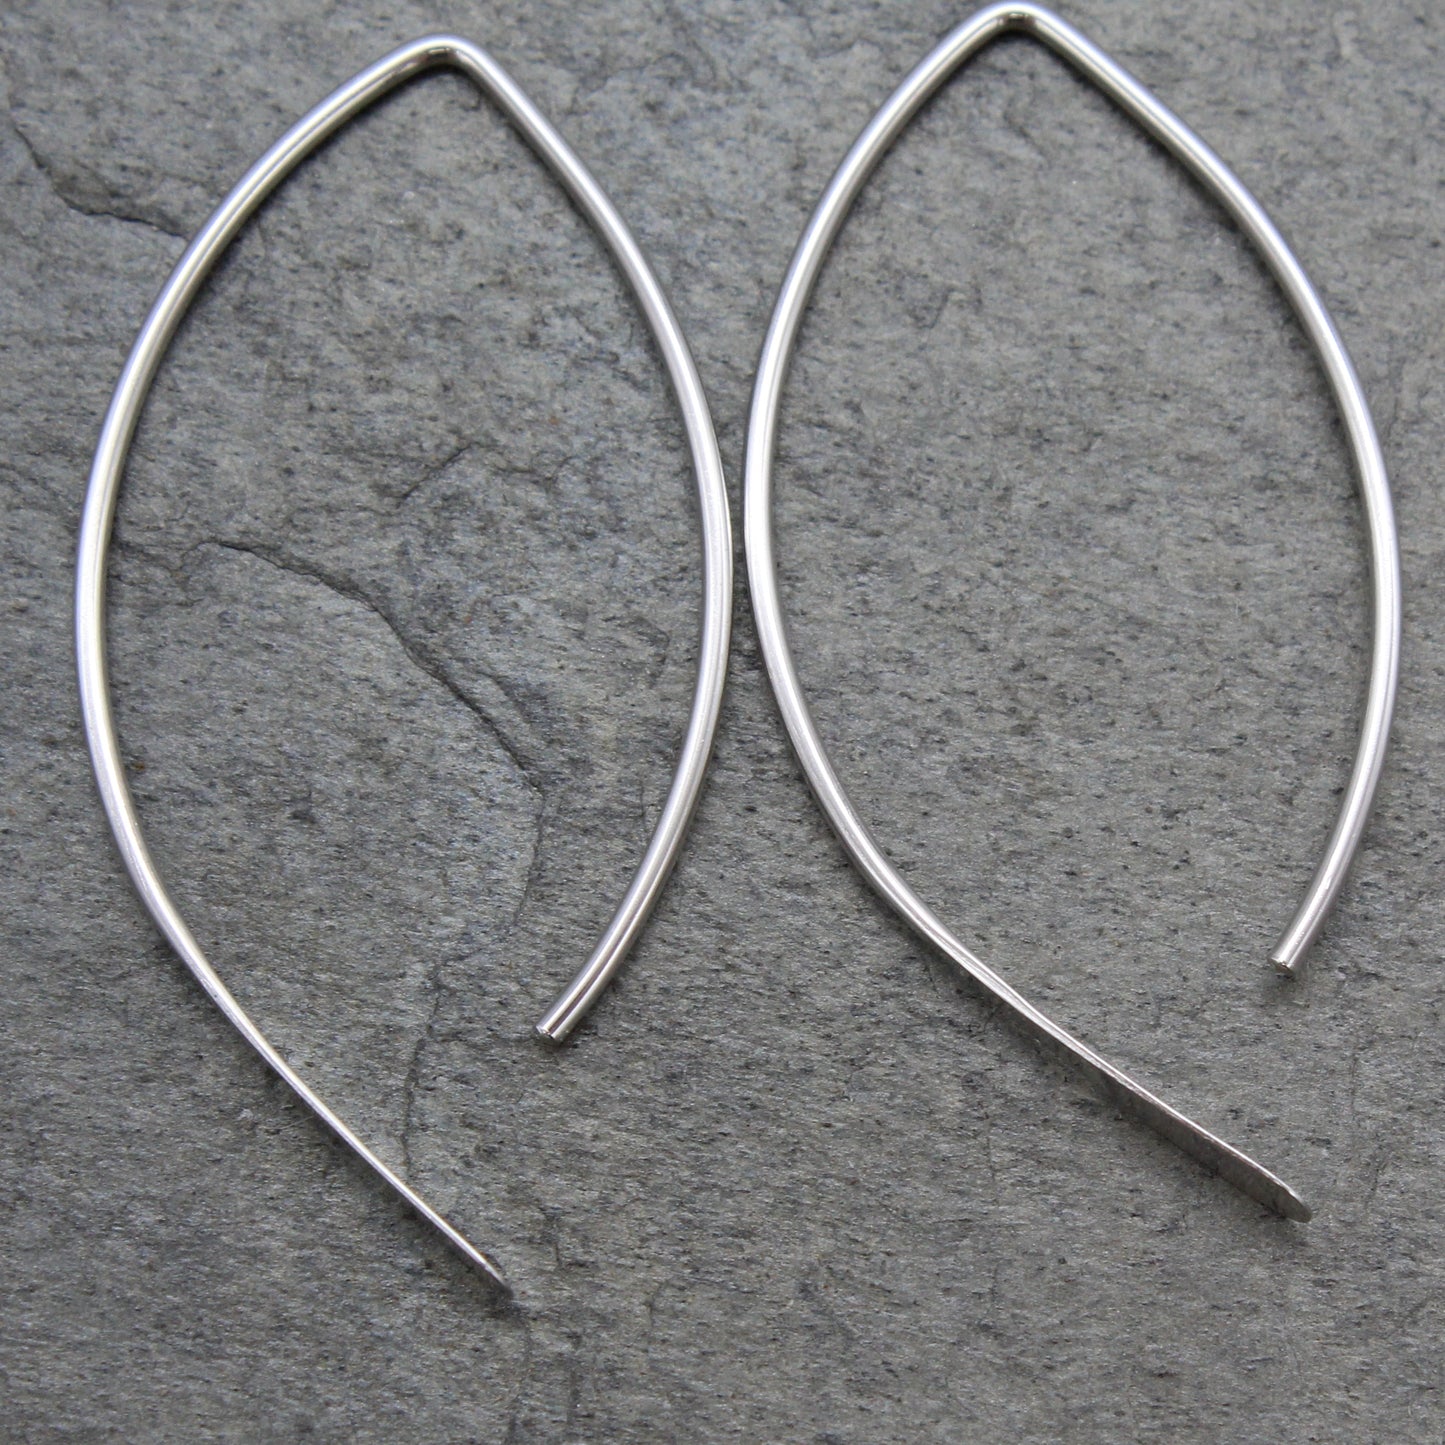 Minimalist Almond Paddle Earrings